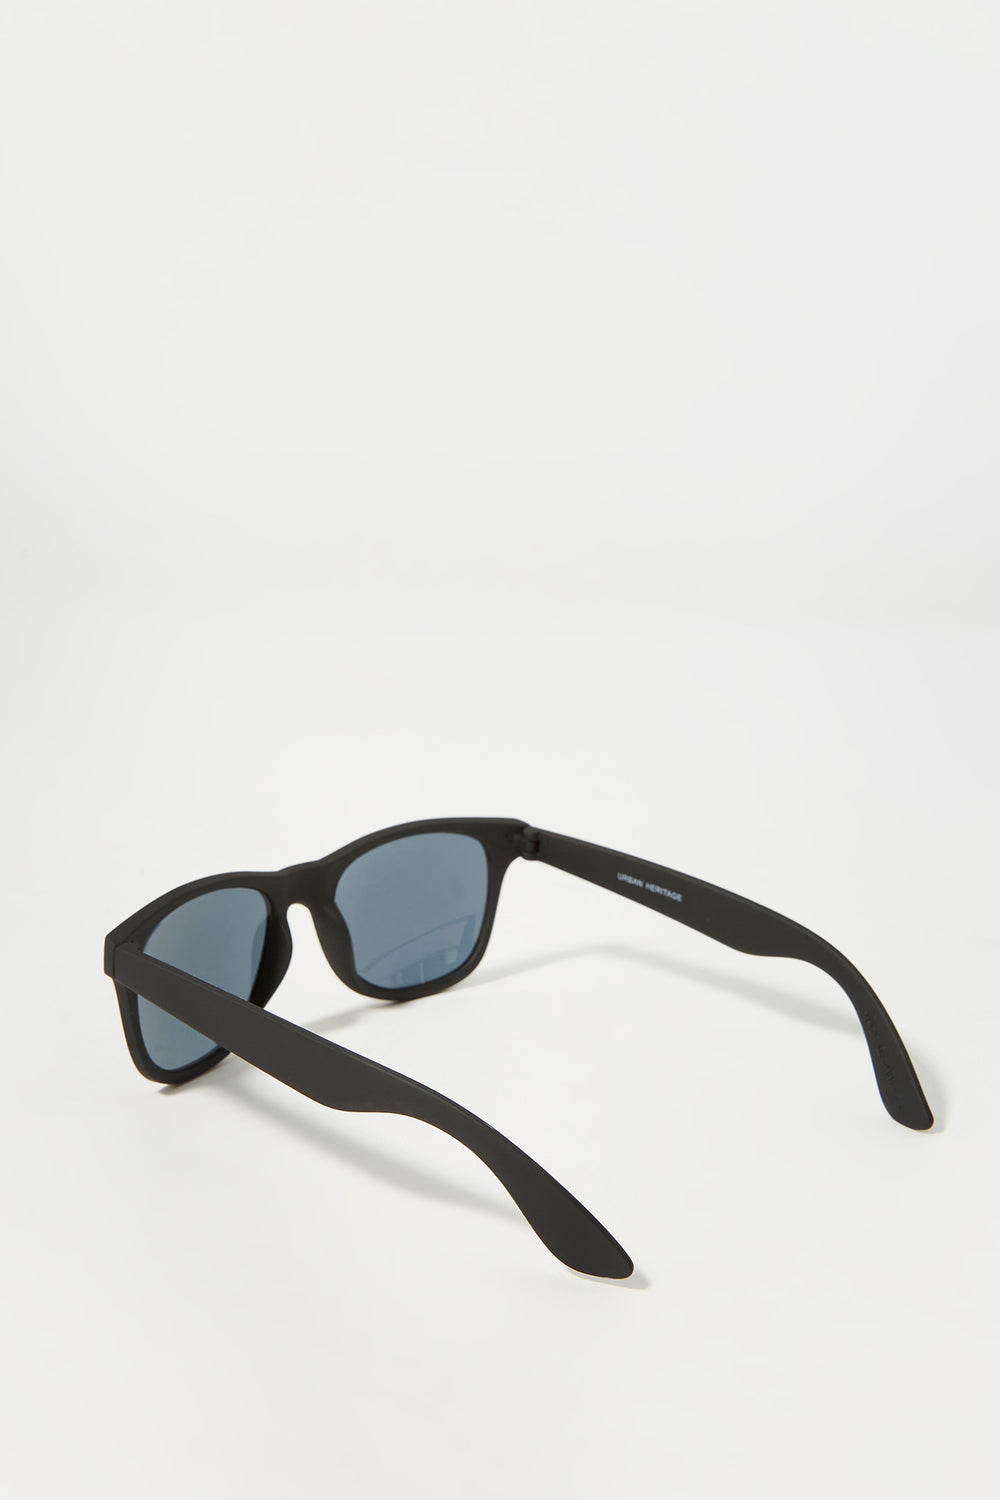 Soft Touch Wayfarer Sunglasses Soft Touch Wayfarer Sunglasses 4